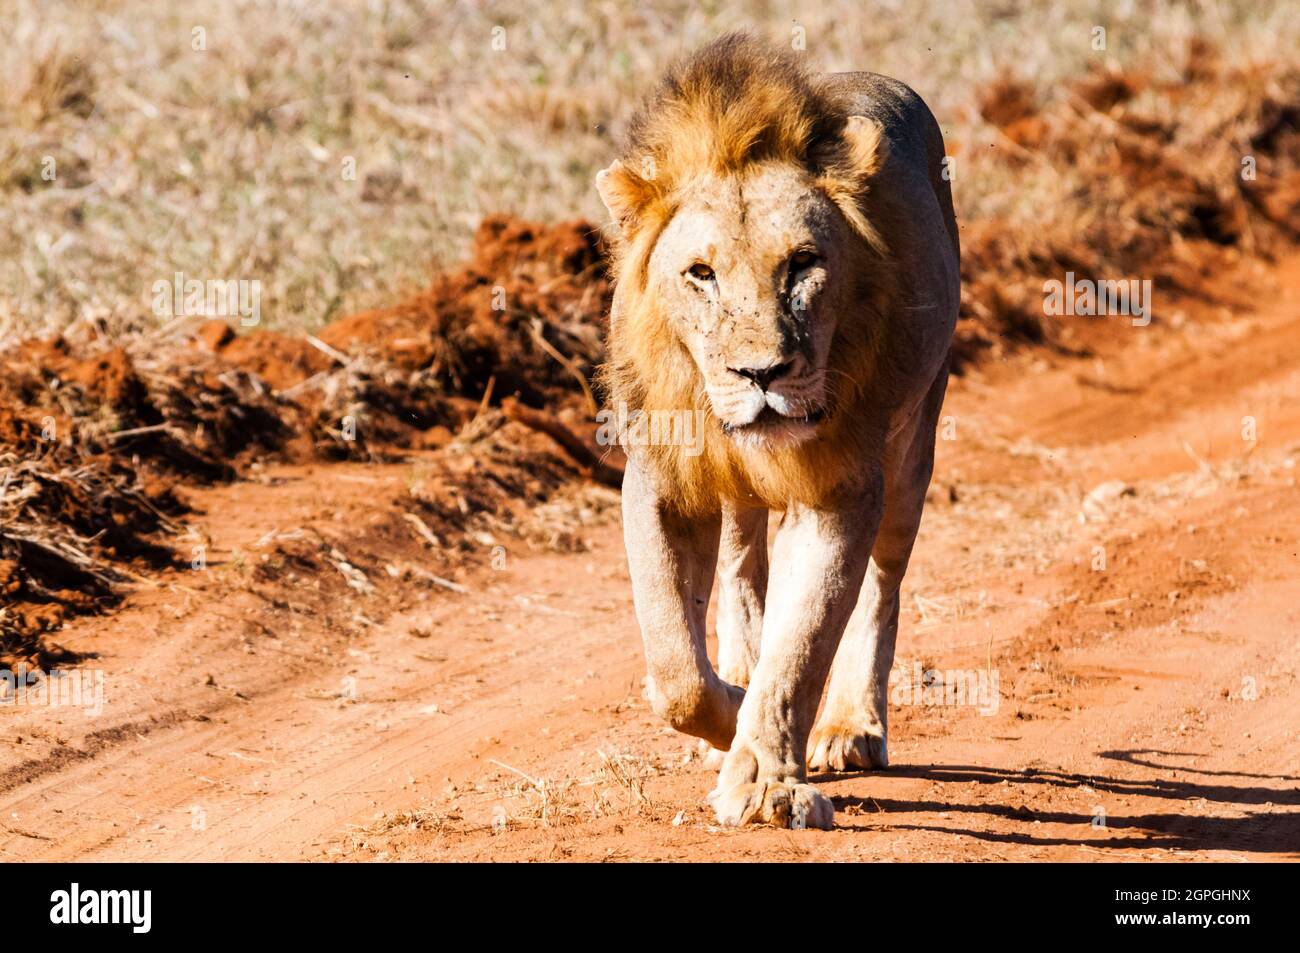 Afrique, Kenya, parc national de Tsavo West, un homme à pied de lion (Panthera leo) Banque D'Images